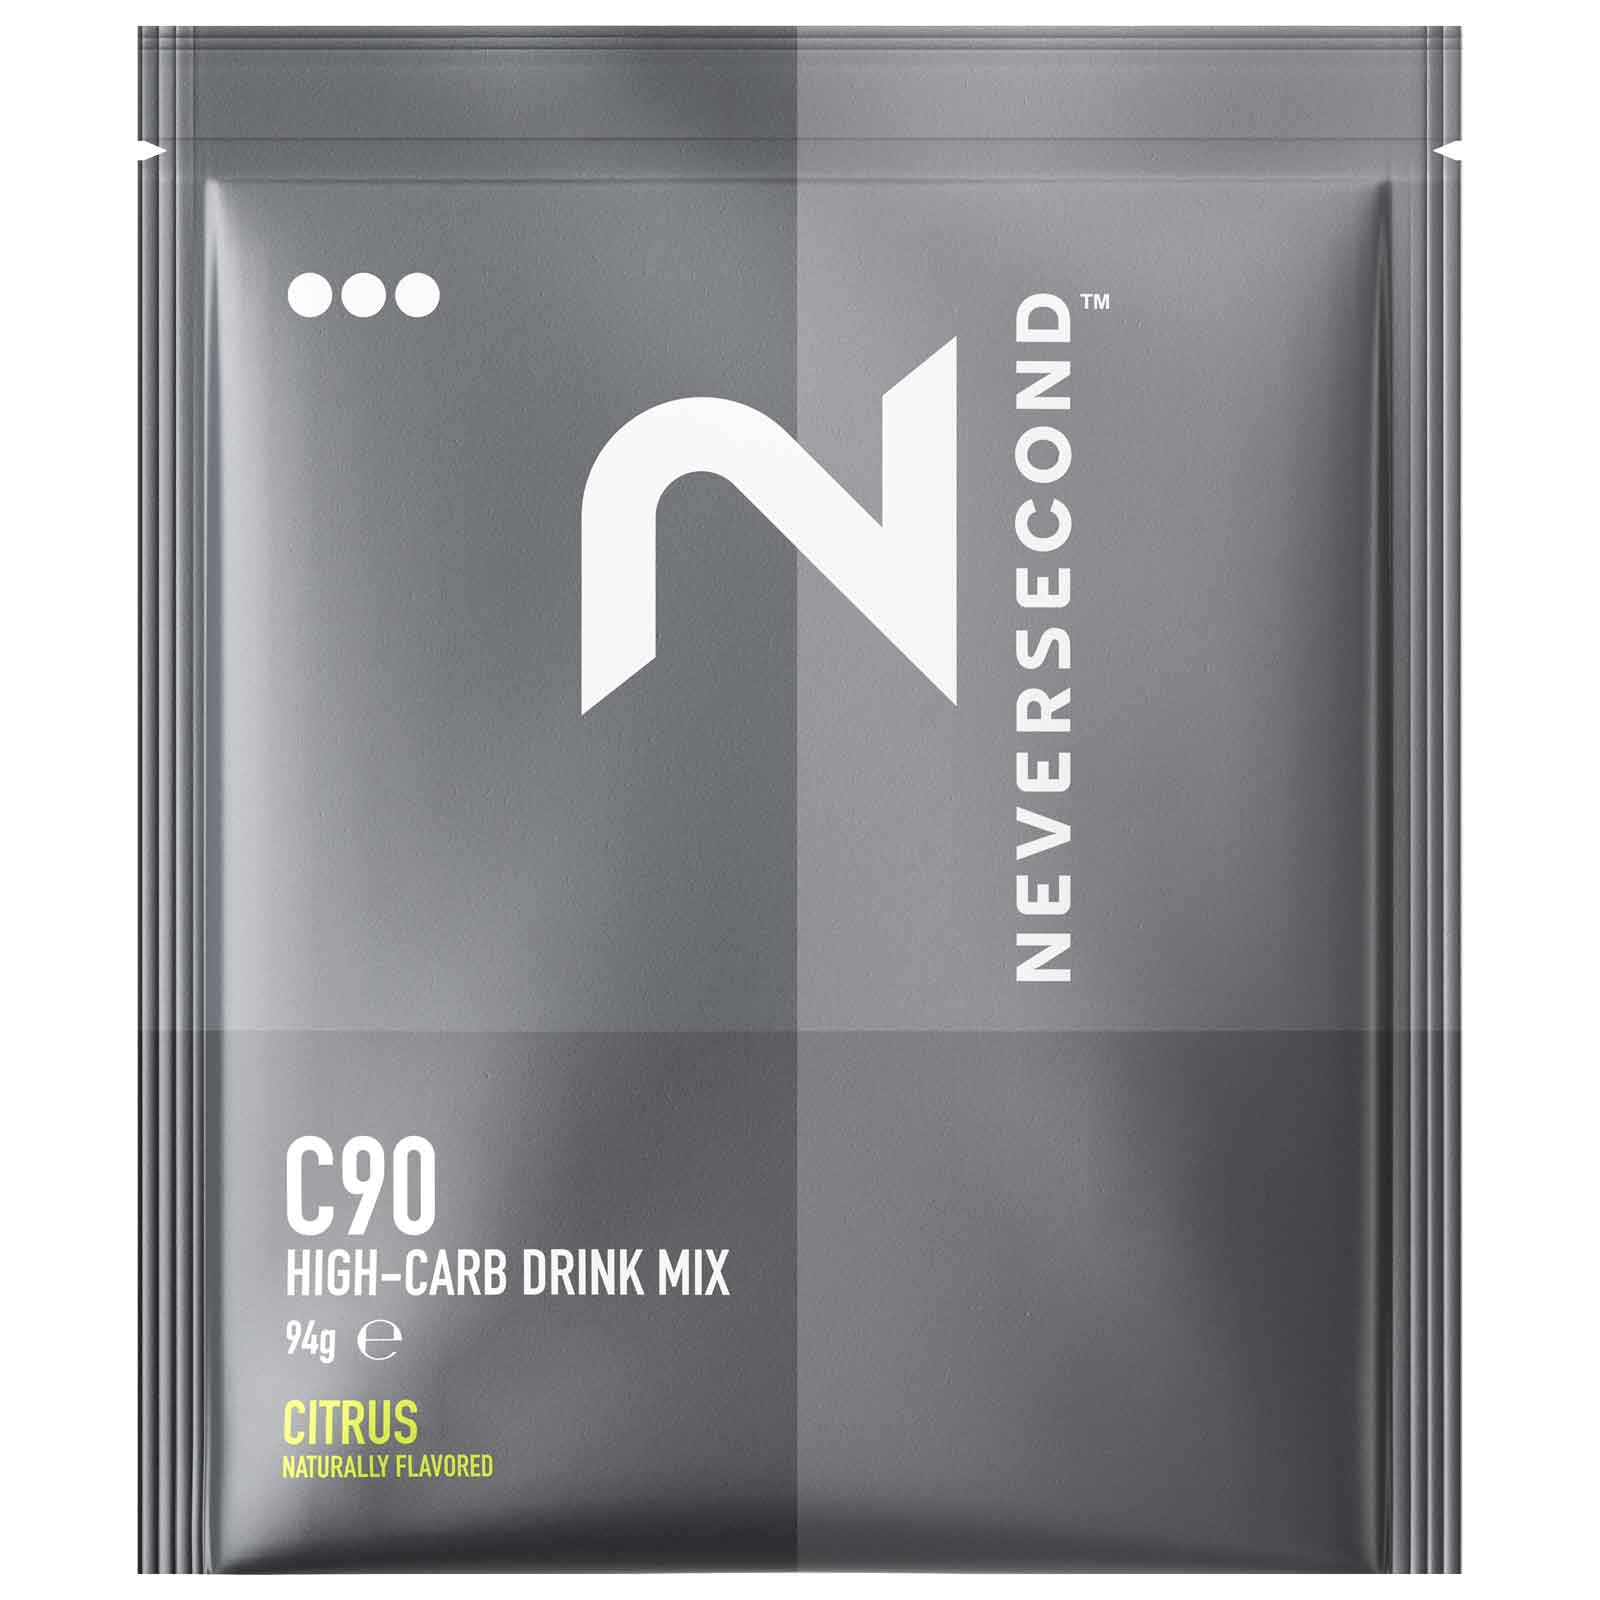 Produktbild von Neversecond C90 High Carb Mix - Kohlenhydrat-Getränkepulver - 94g